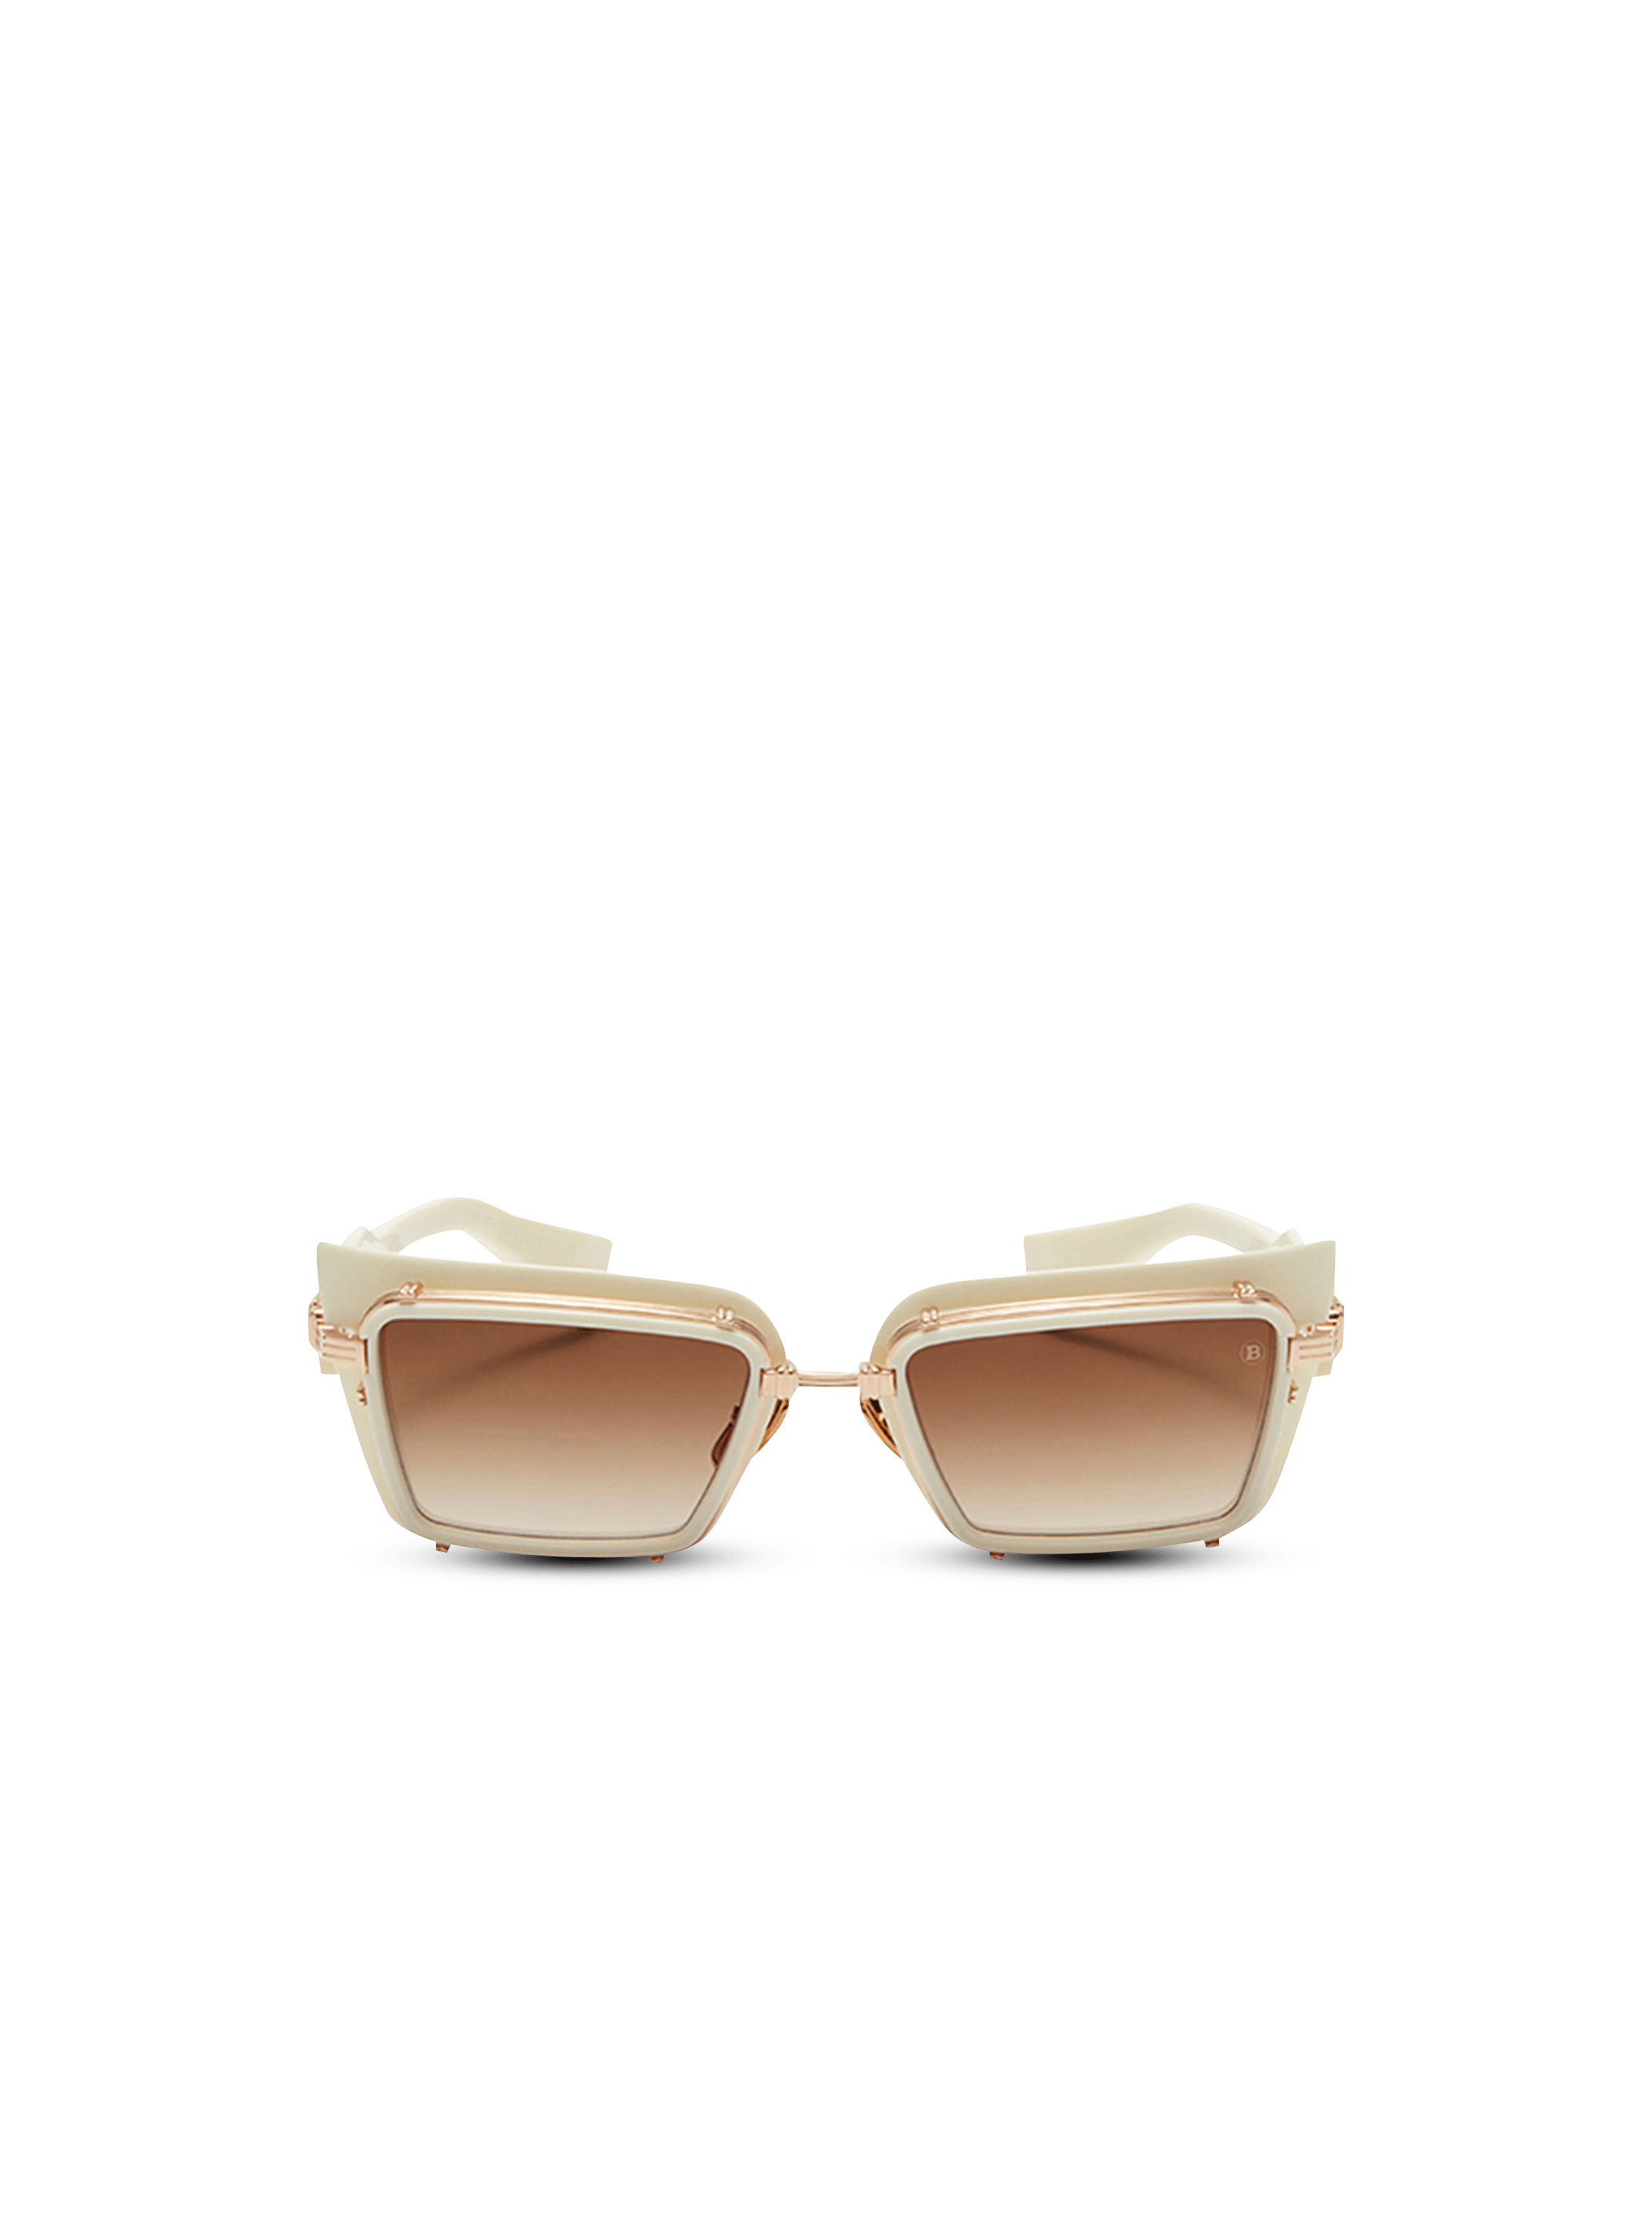 Gafas de Sol Blancas Balmin Admirable – Milanelo